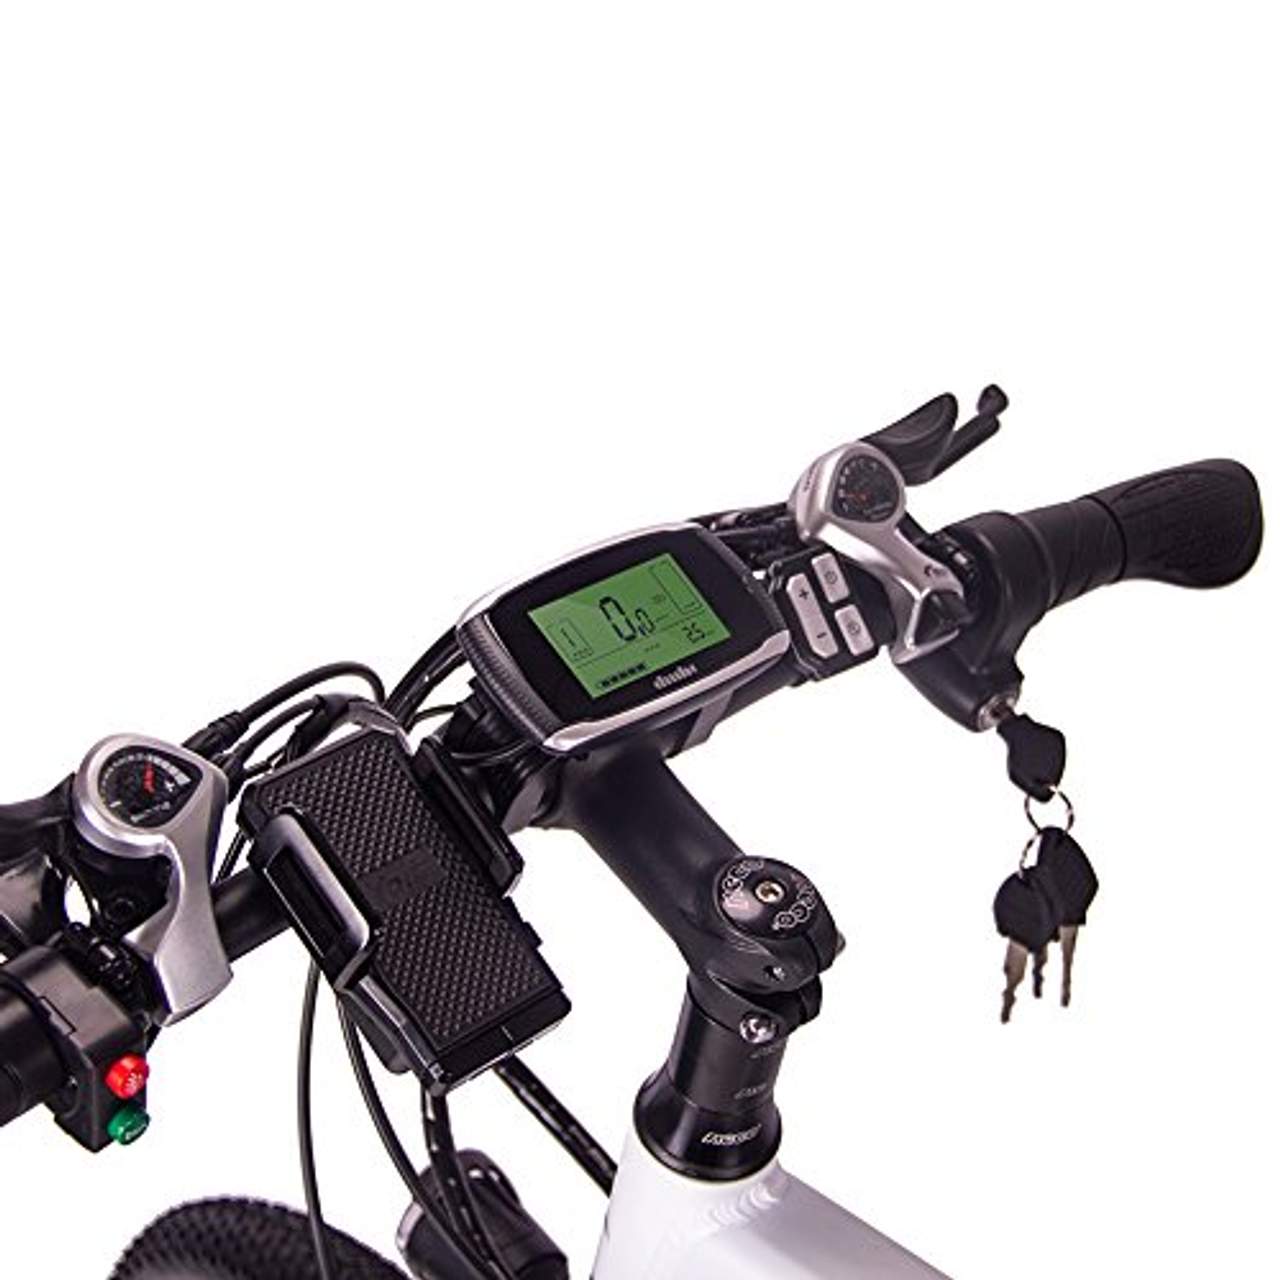 RICH BIT 26-Zoll-E-Bike mit zusammenklappbarem Elektrofahrrad